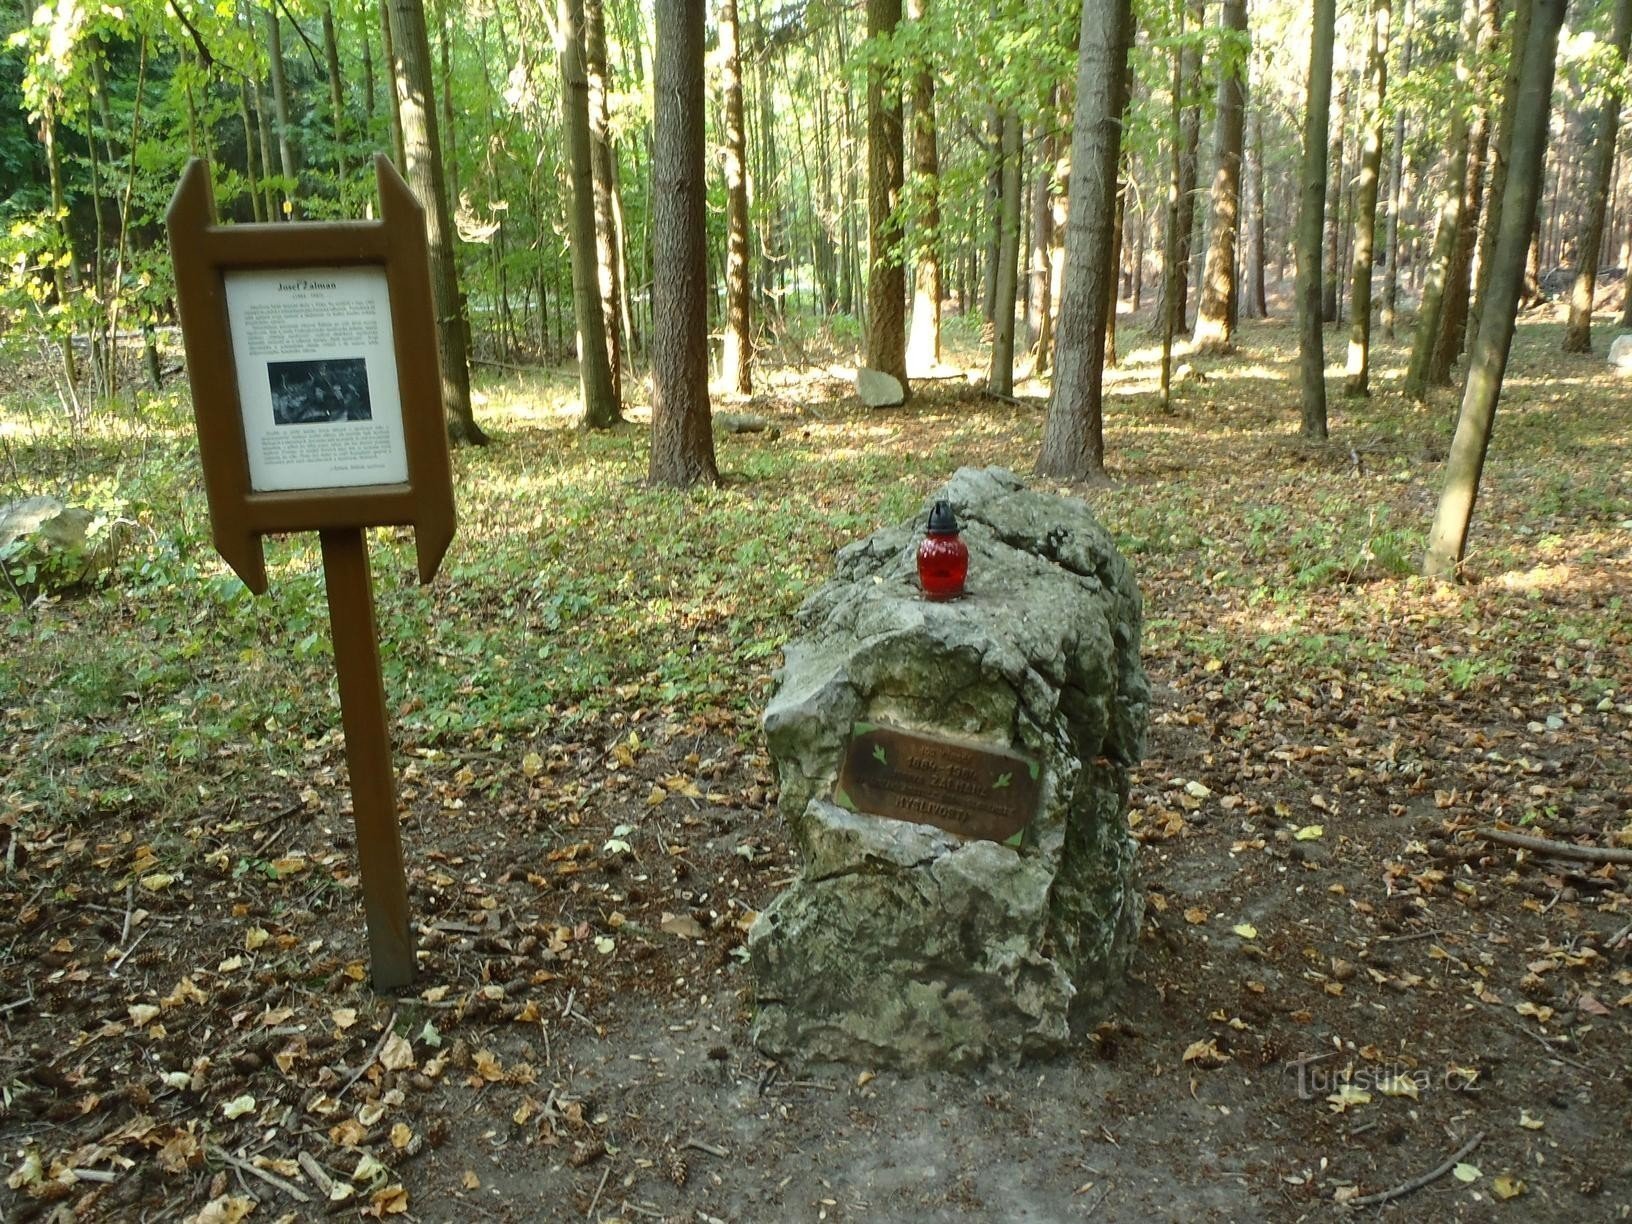 Žalmanův pomník - 18.9.2011